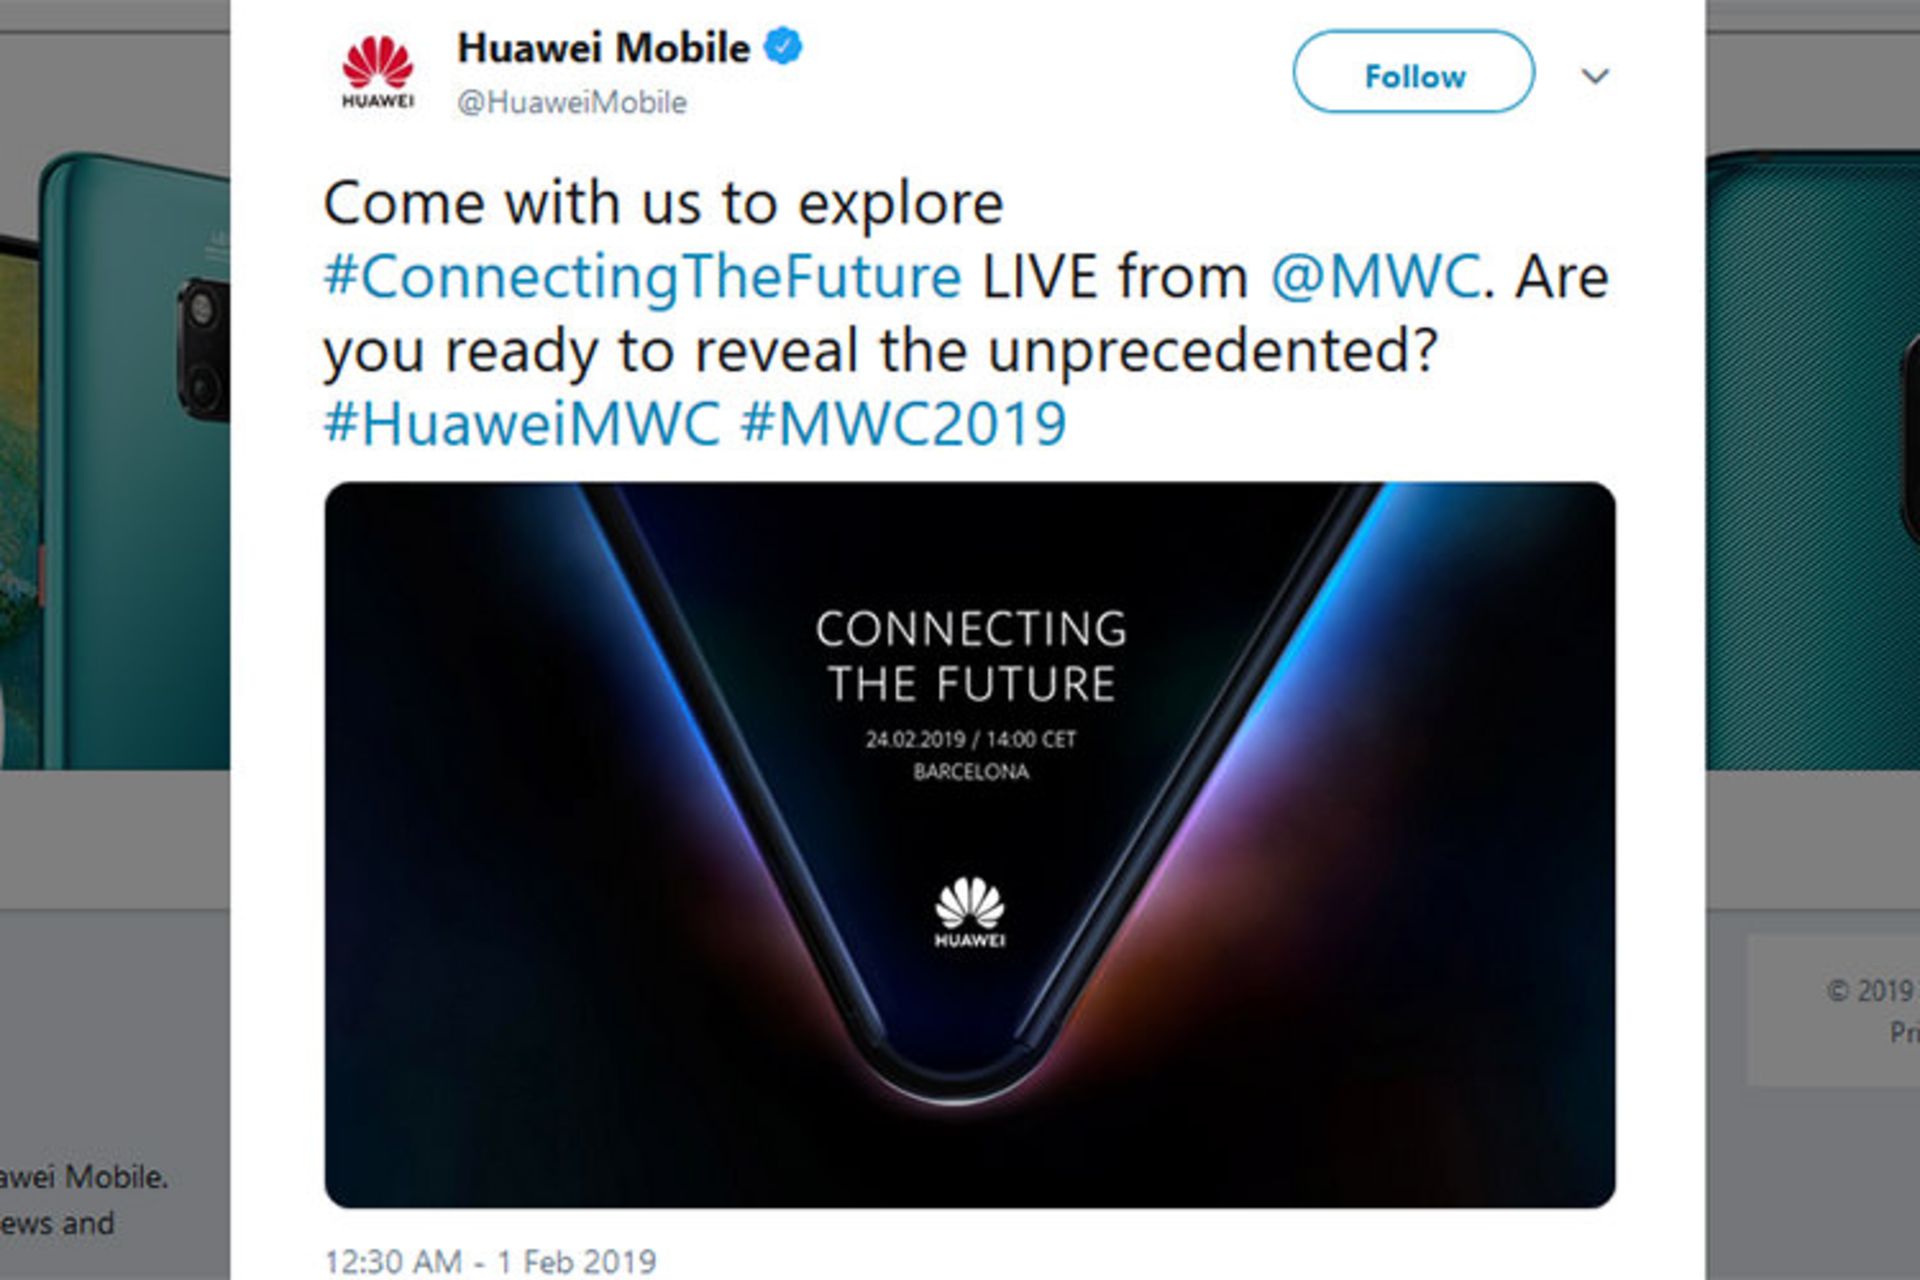 دعوتنامه هواوی / Huawei Invitation